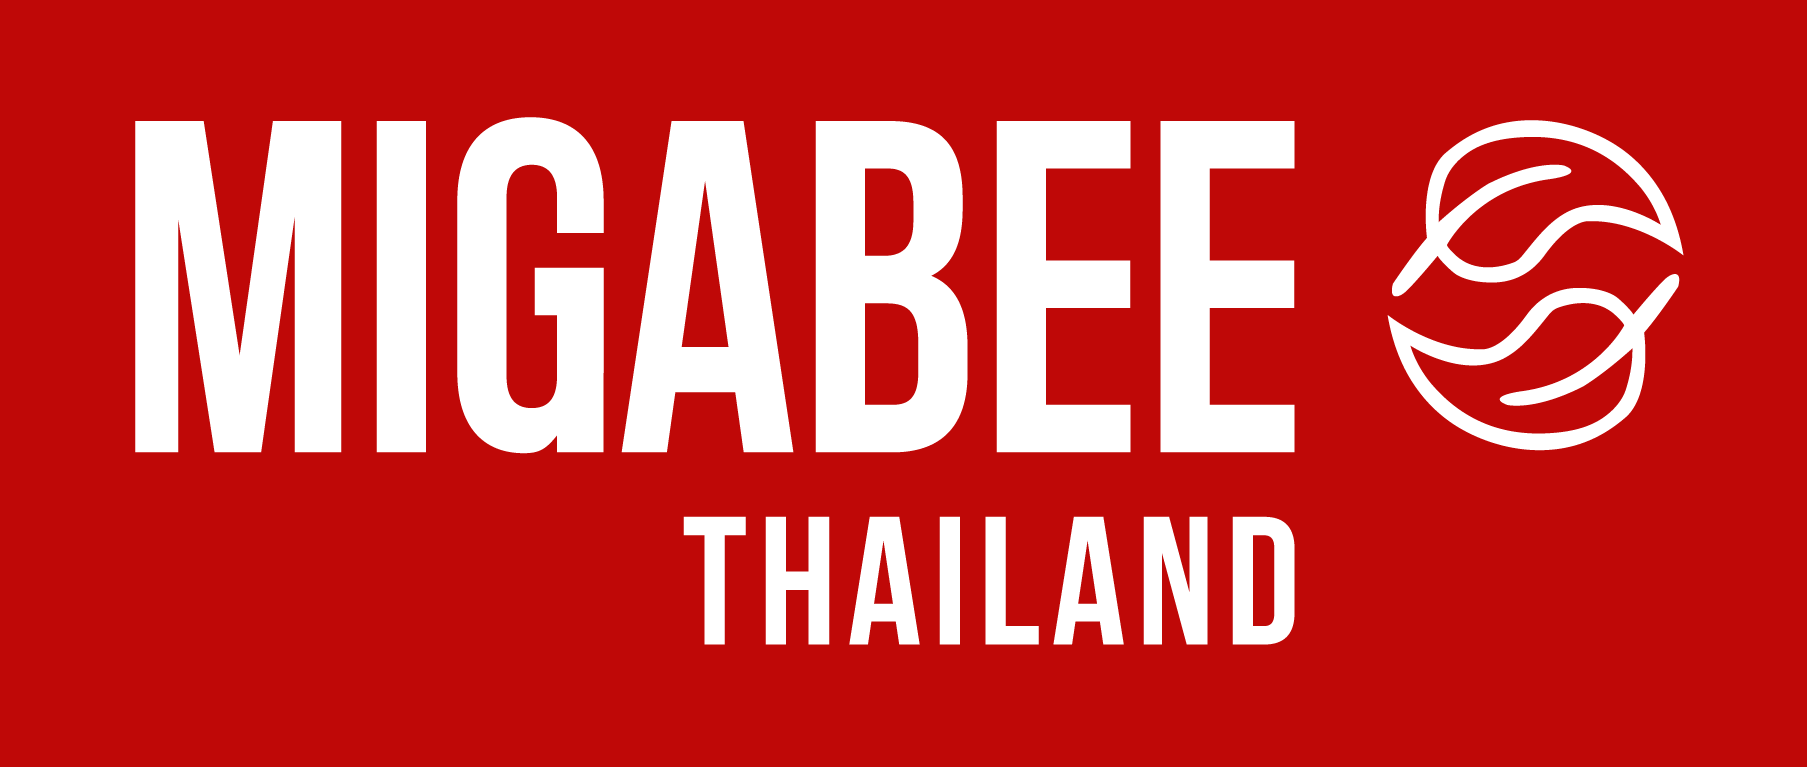 Migabee Thailand